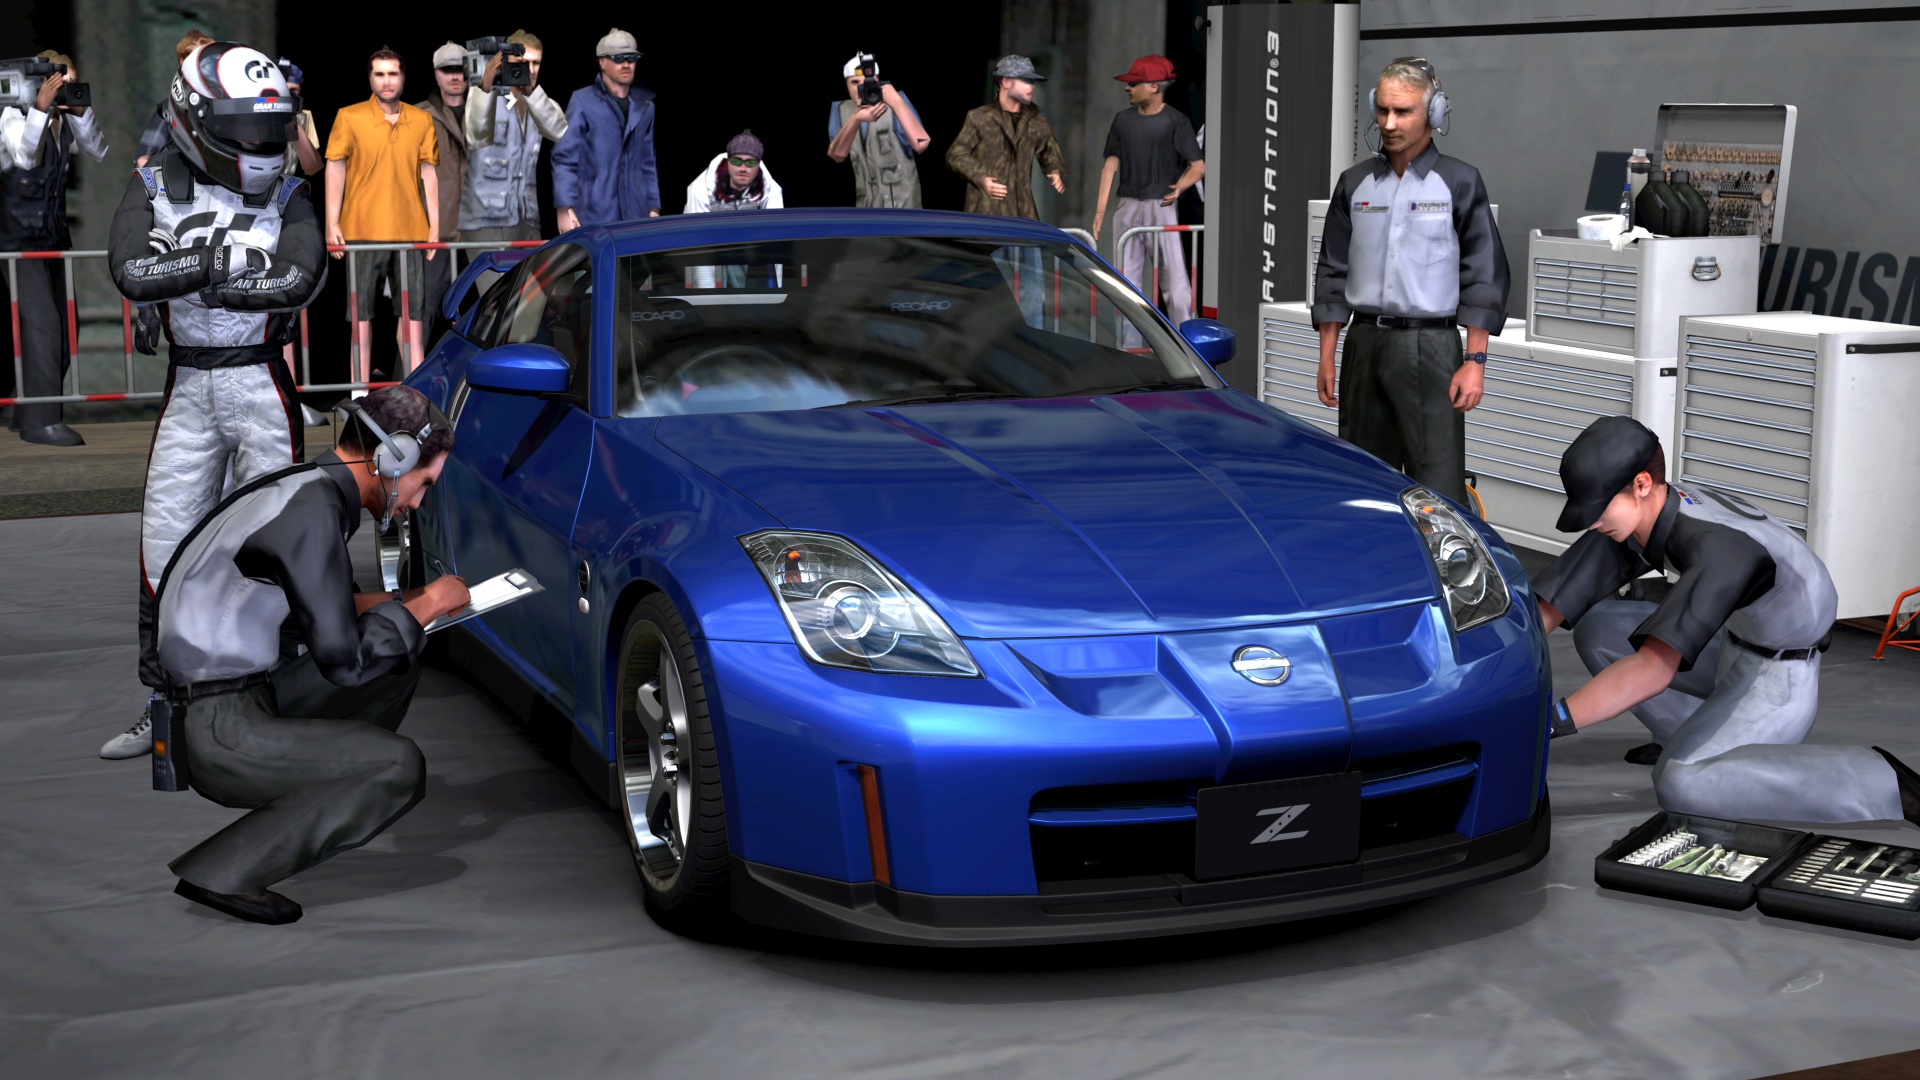 Immagine pubblicata in relazione al seguente contenuto: Gran Turismo 5 Prologue, Sony diffonde nuove info e screenshot | Nome immagine: news7005_5.jpg